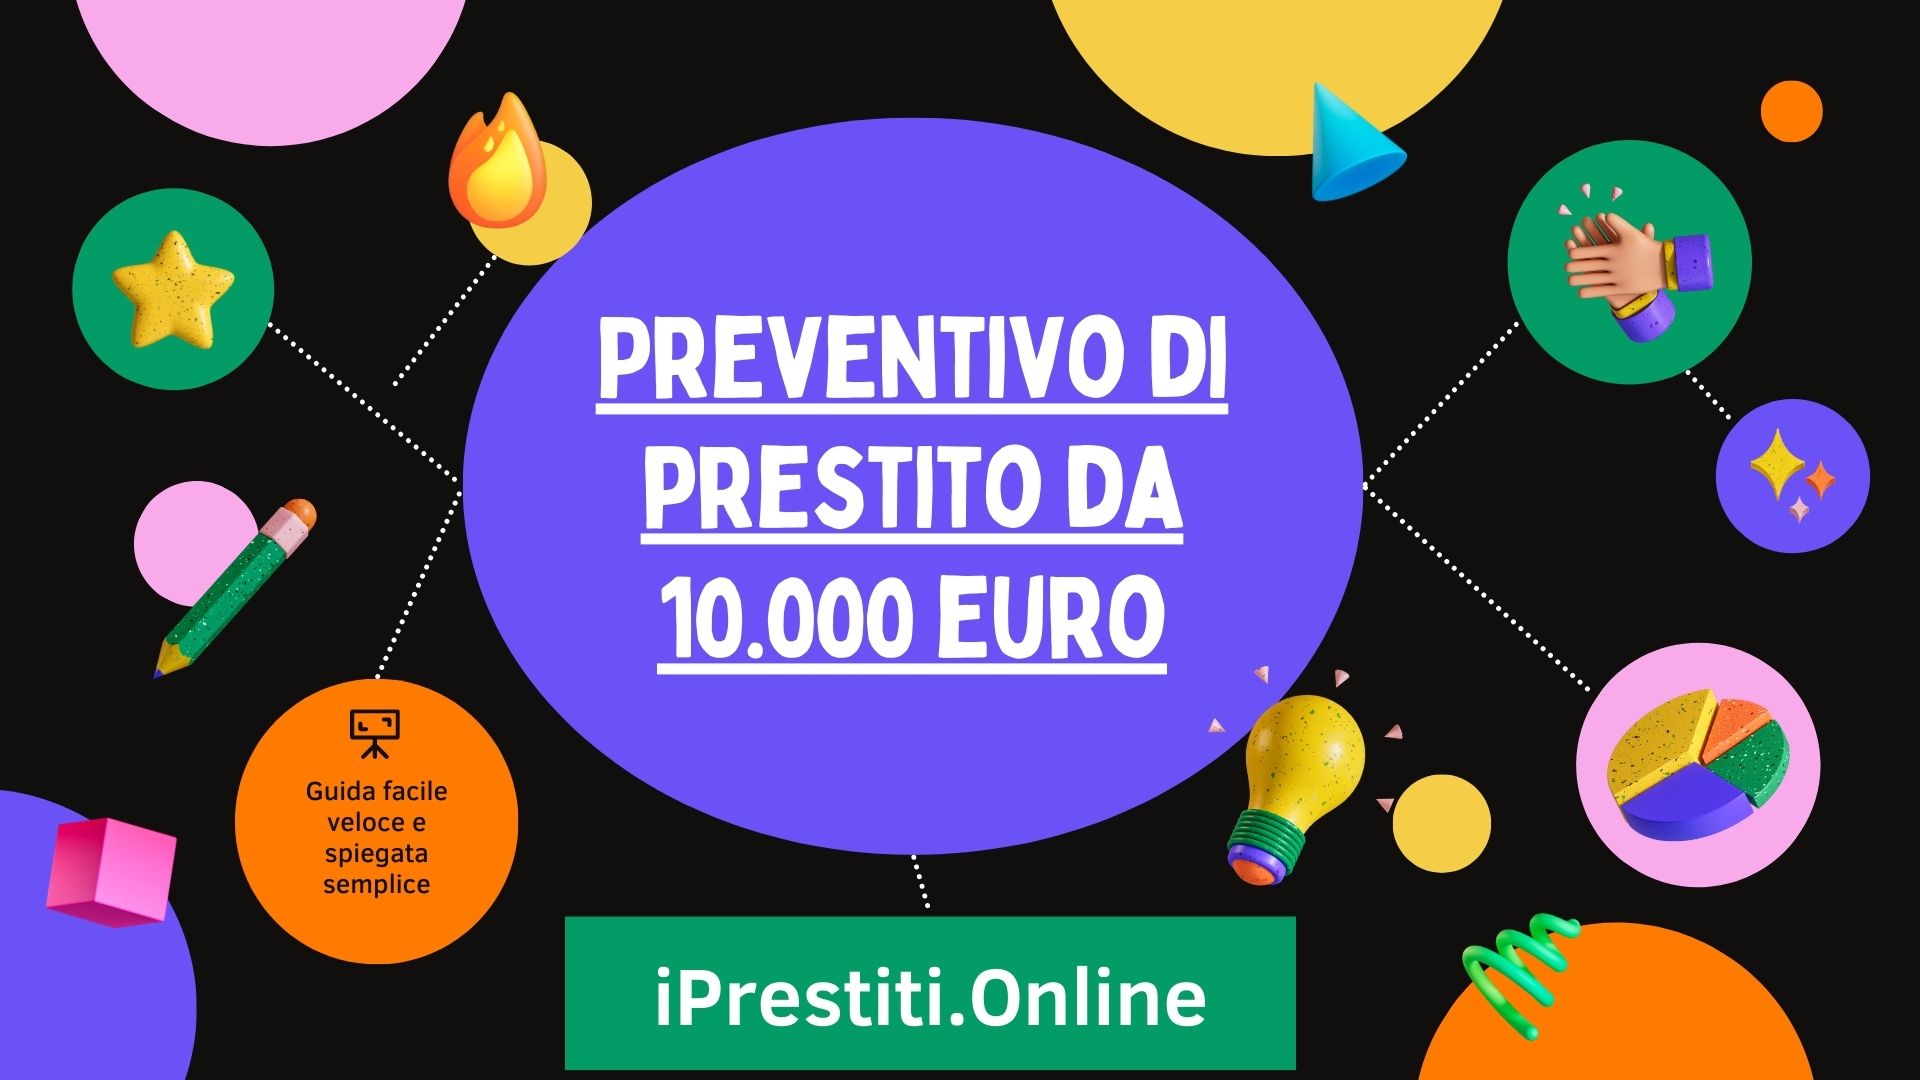 Preventivo di prestito da 10000 euro